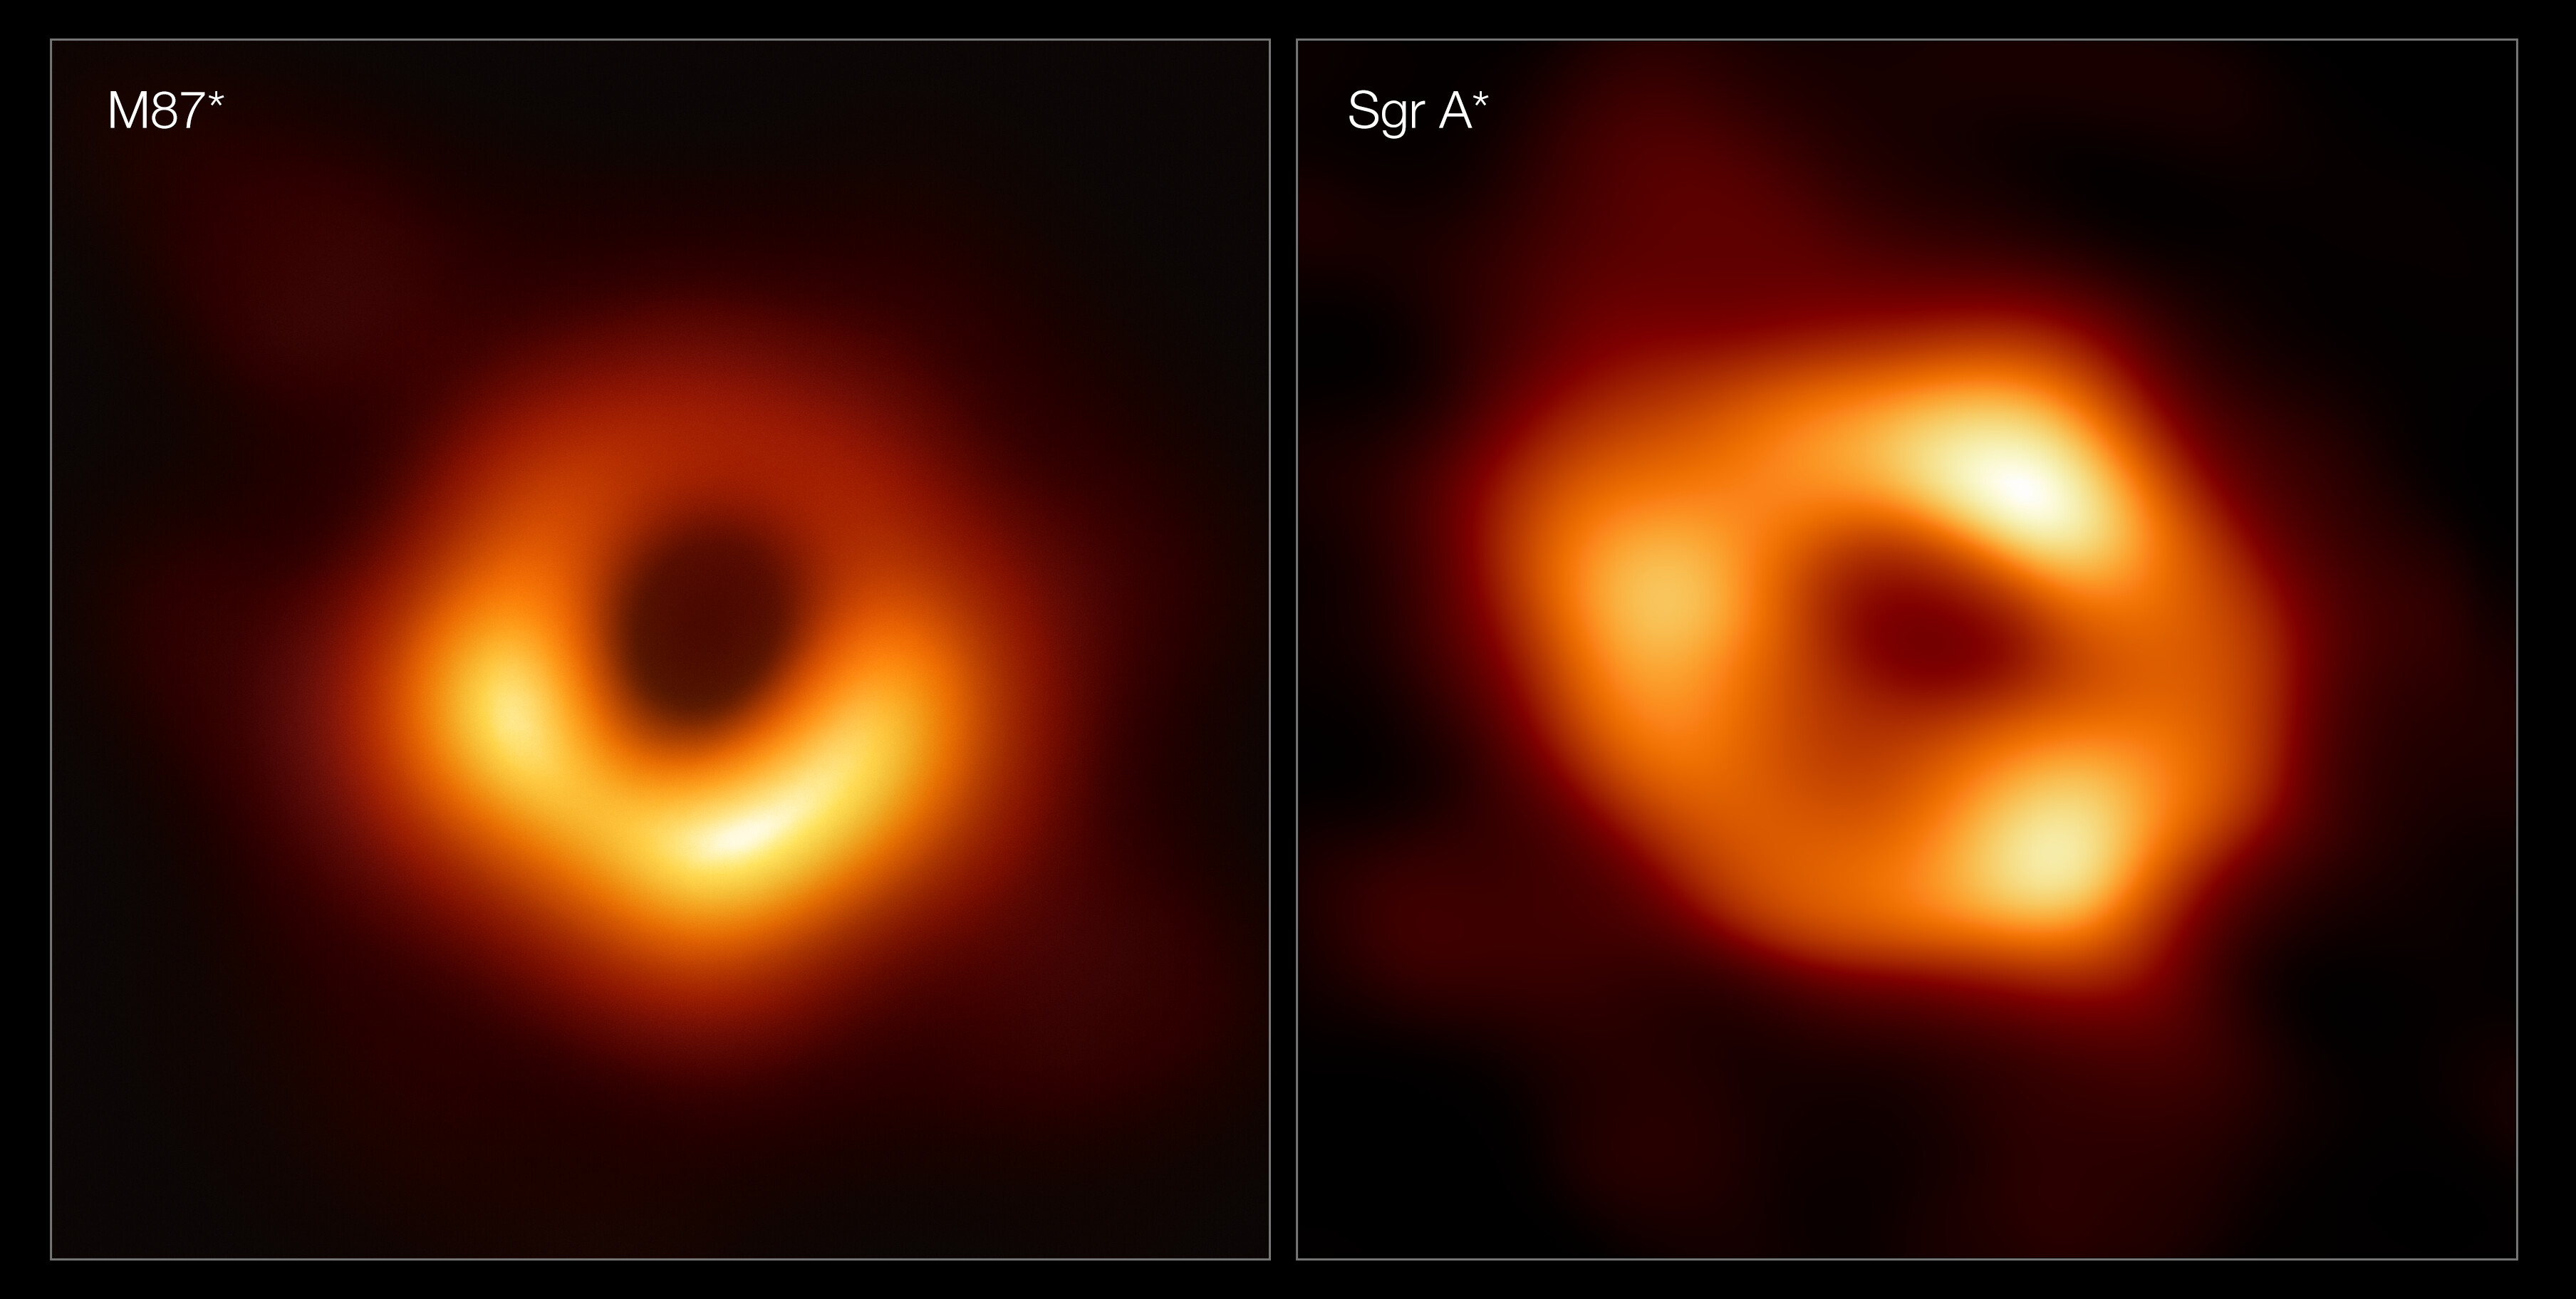 Obrazy dwóch supermasywnych czarnych dziur: M87* i Sgr A*